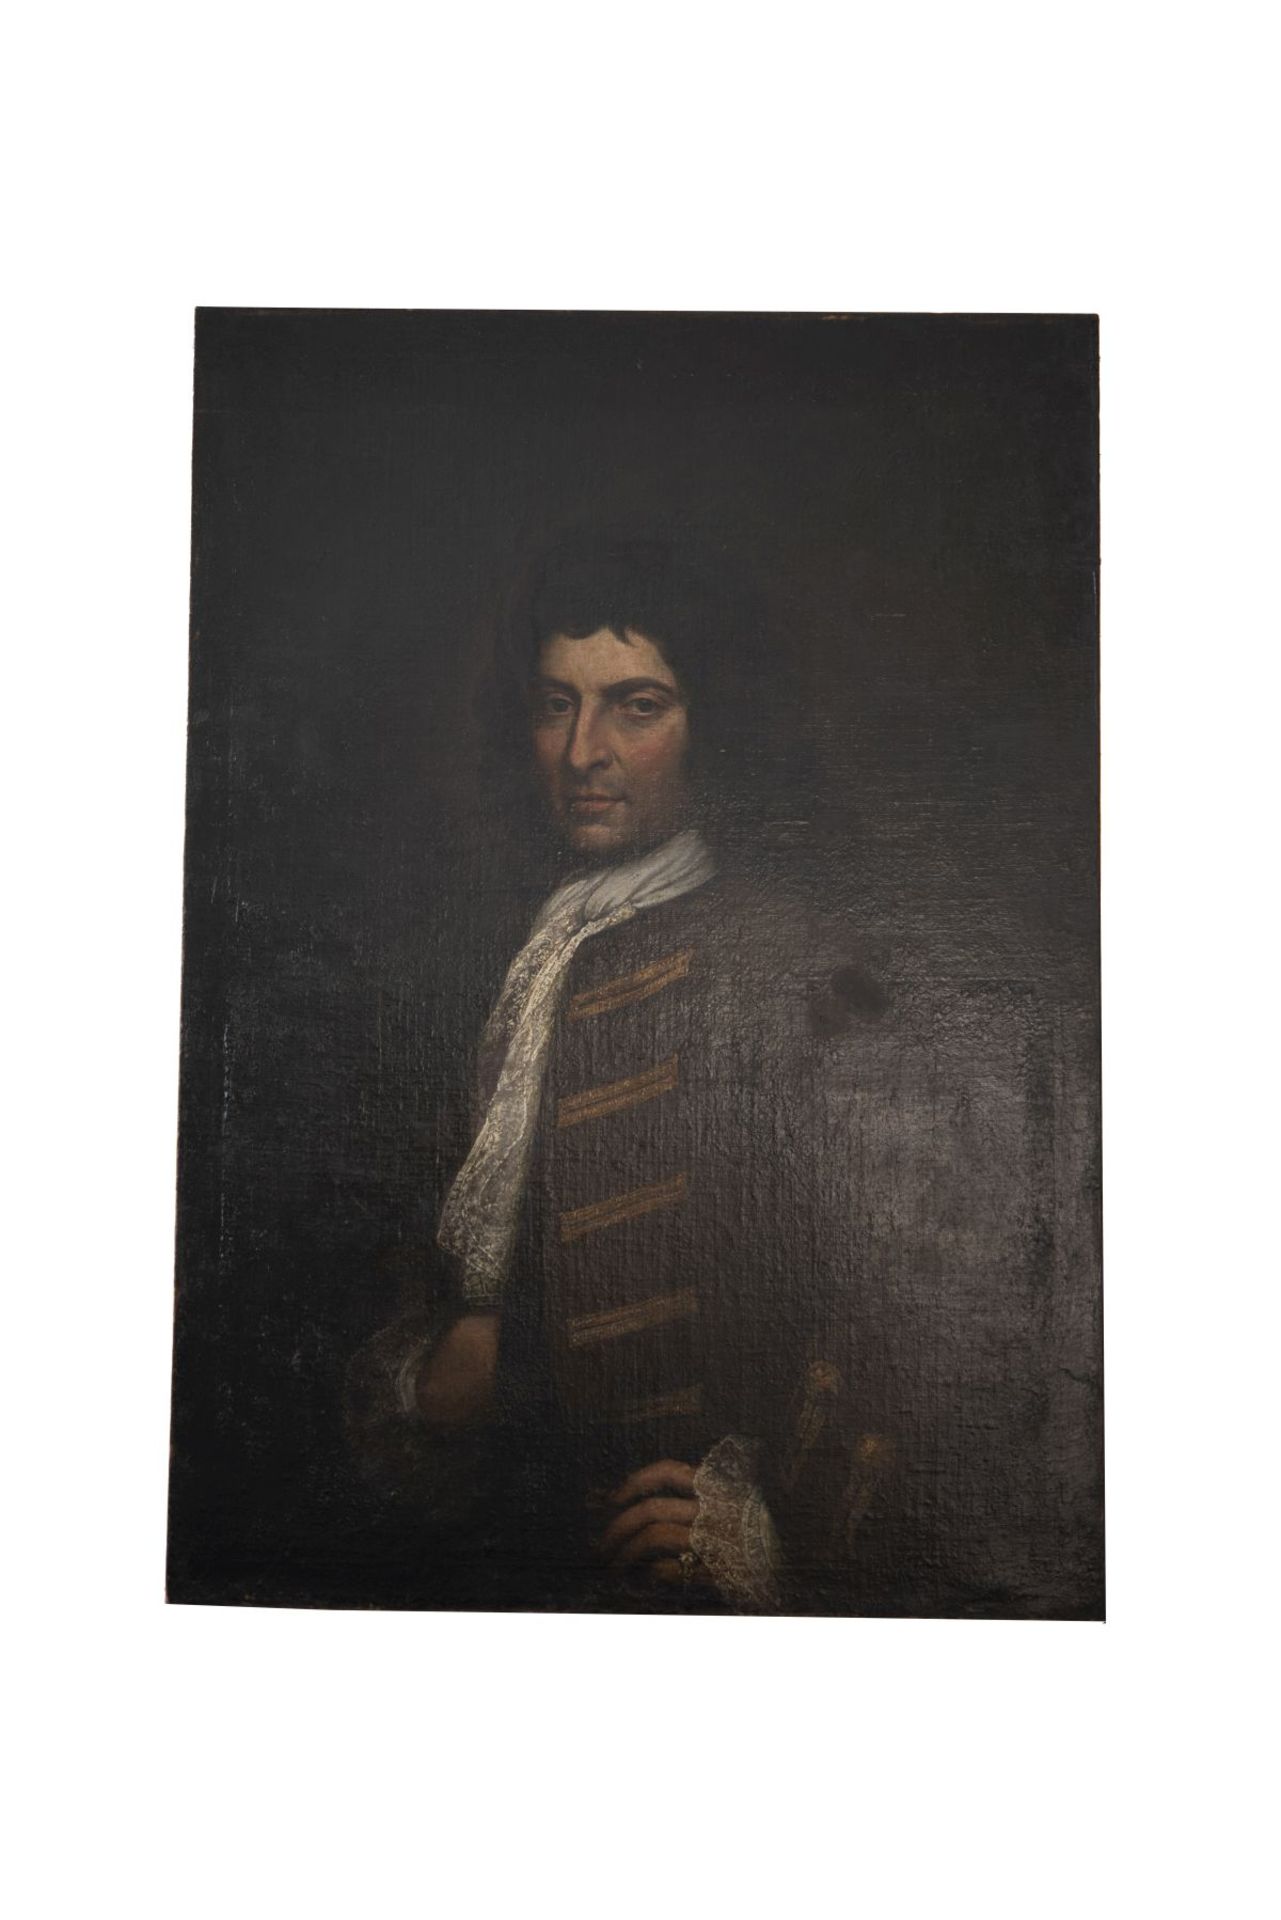 Portrait of a Nobleman with Lace Jabot, Approx. 1700/75 | Bildnis eines adeligen Herrn mit Spitzenja